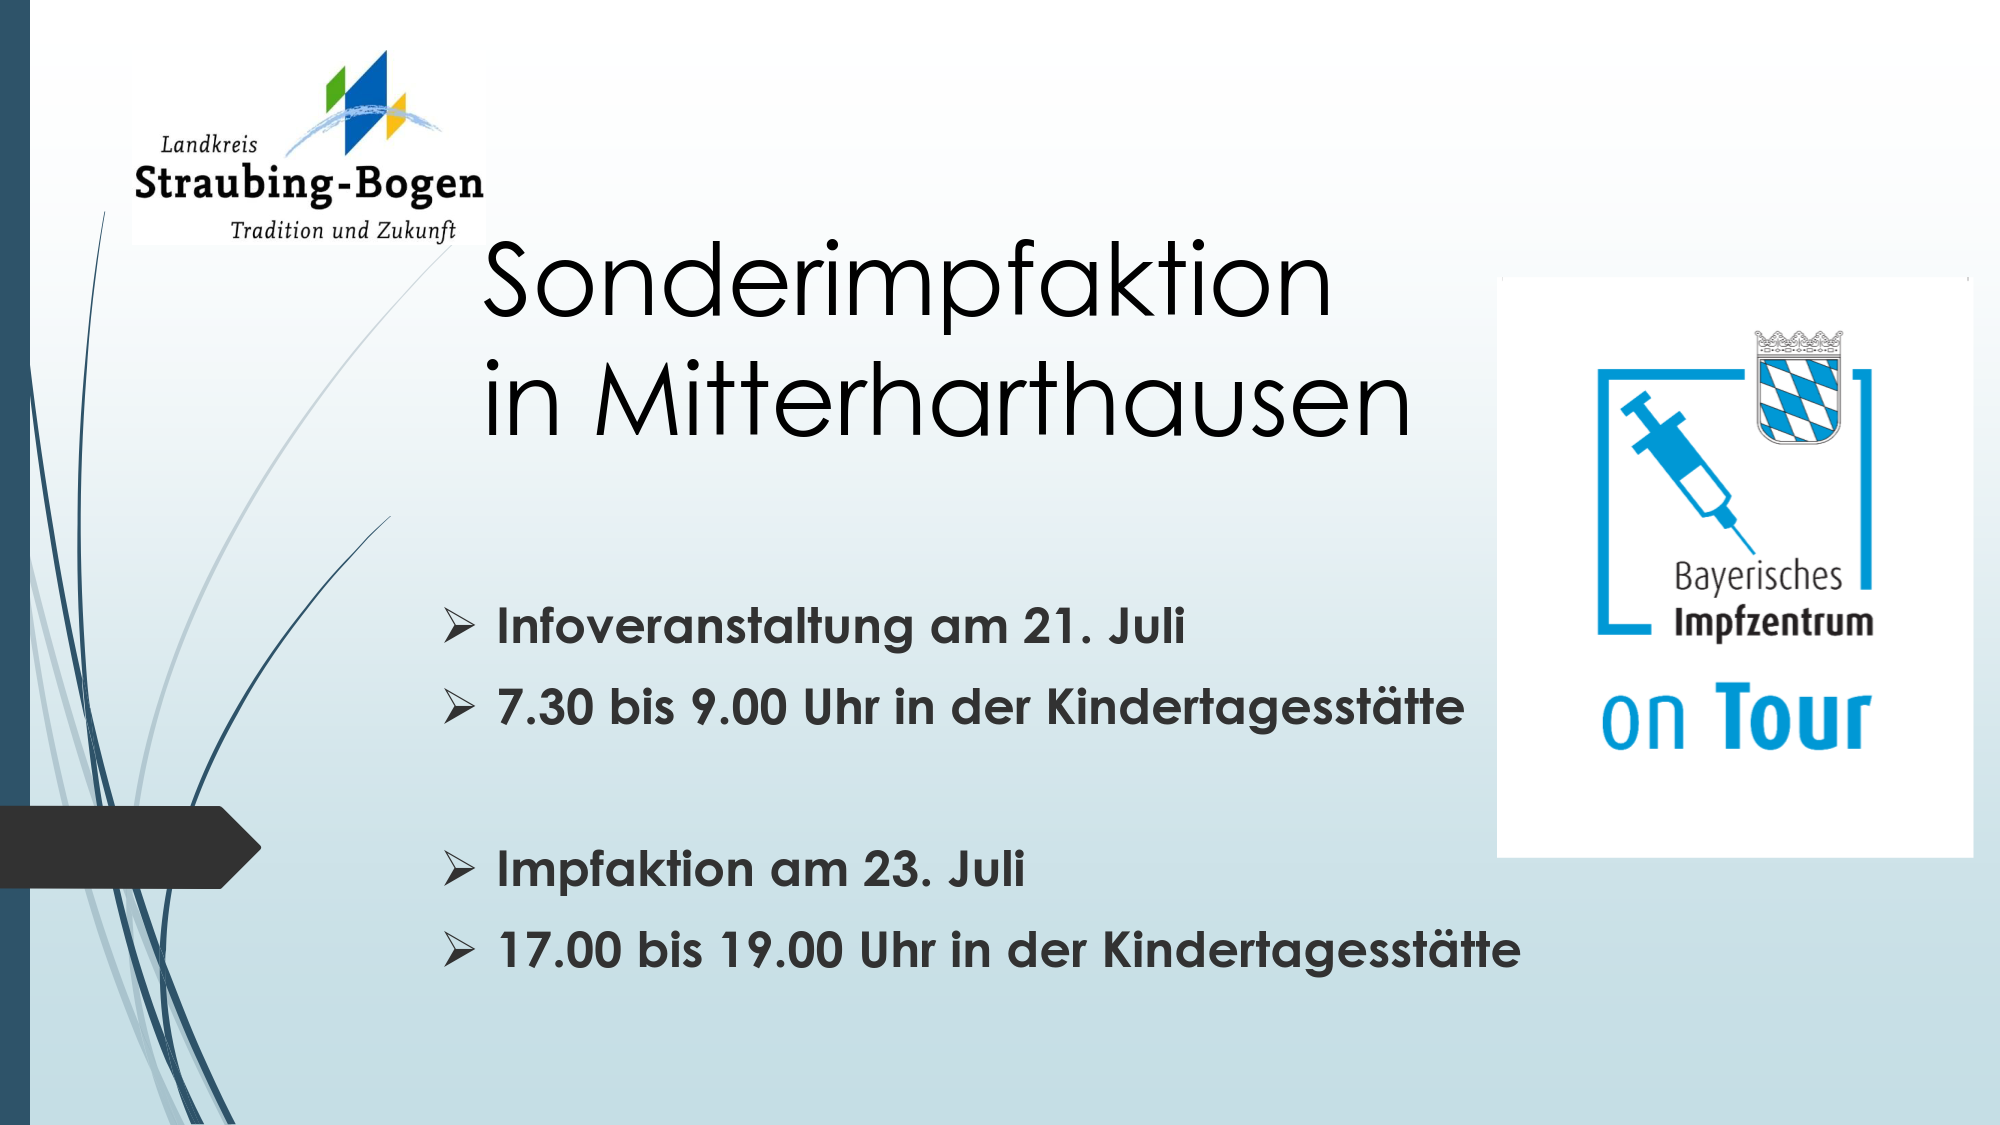 Weitere Impfaktion mit mobilen Teams am Freitag in Mitterharthausen